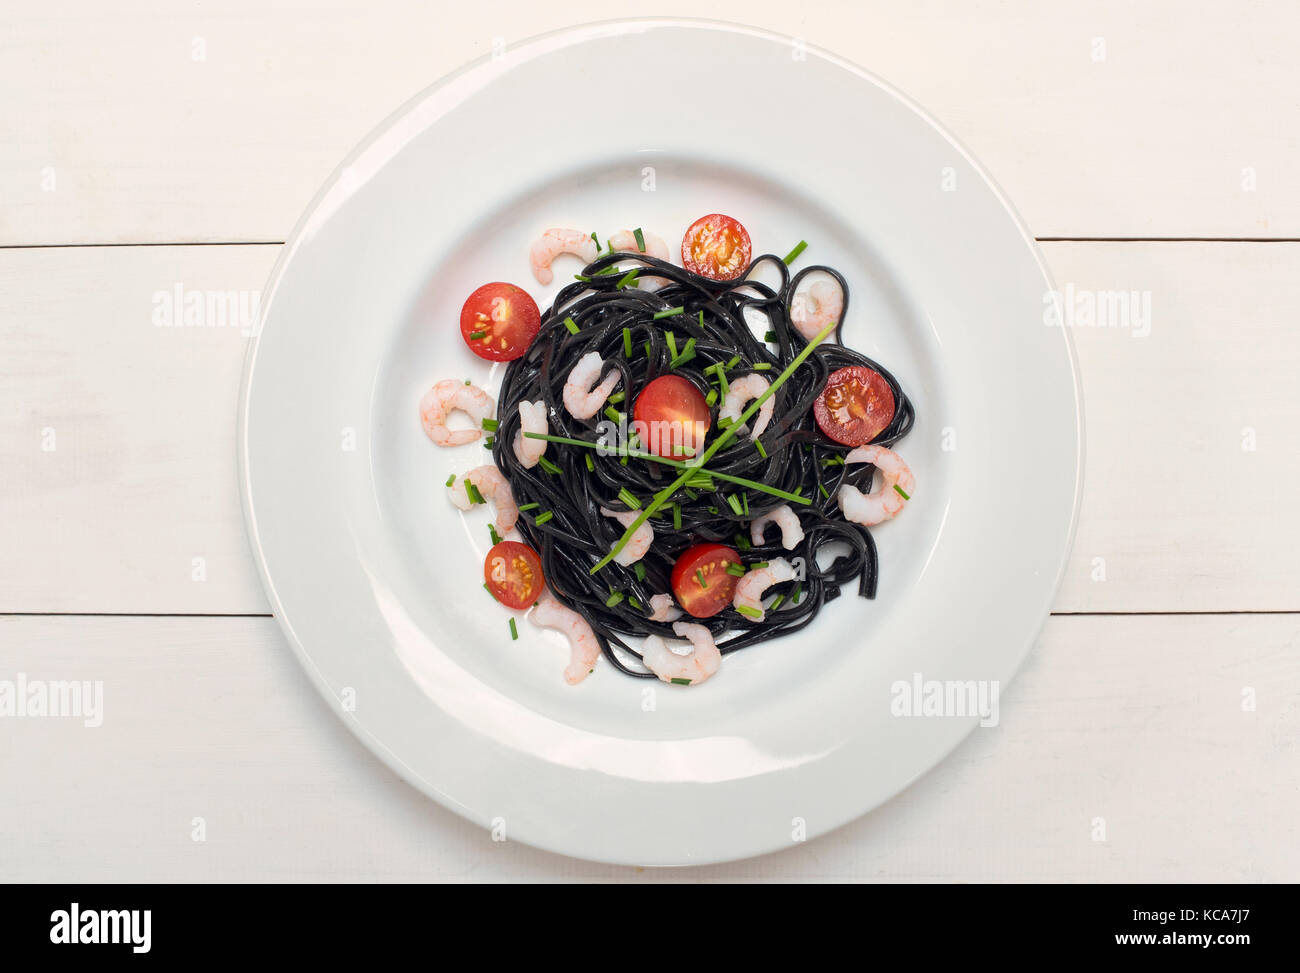 Calamari inchiostro nero pasta con gamberetti, erba cipollina e pomodori su sfondo bianco Foto Stock